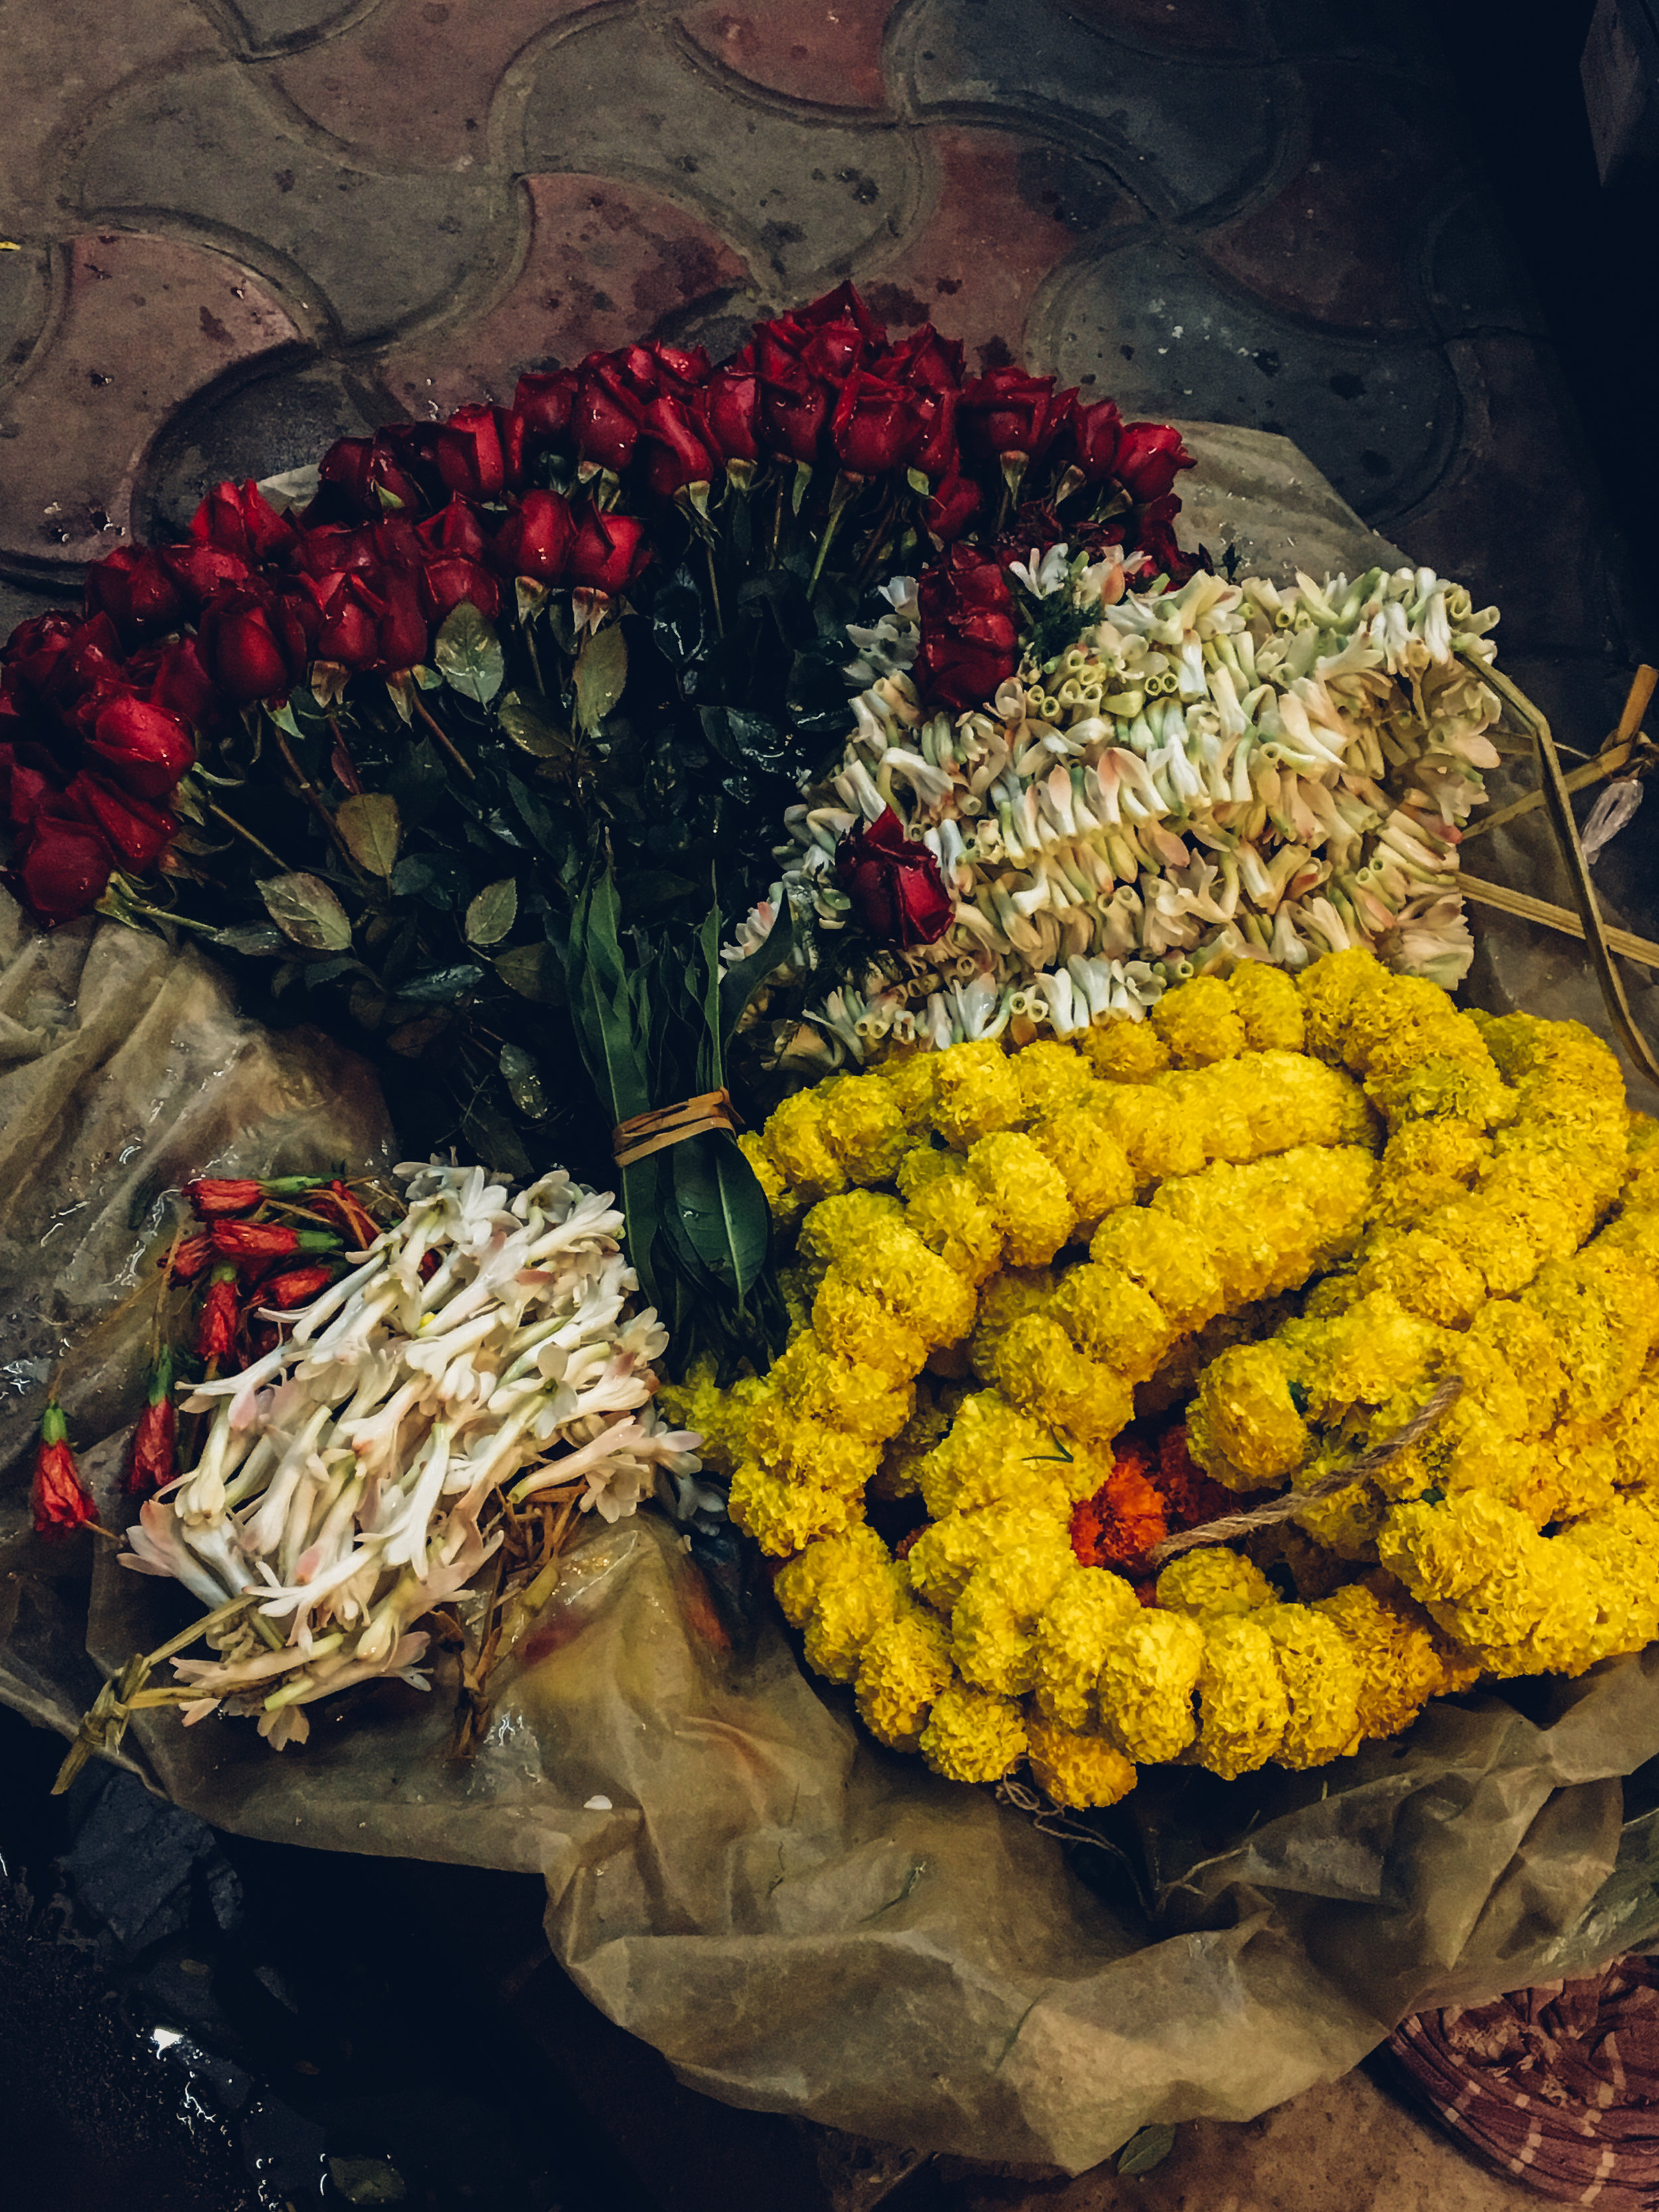  A flower seller's goods at Garihat Market.&nbsp; 